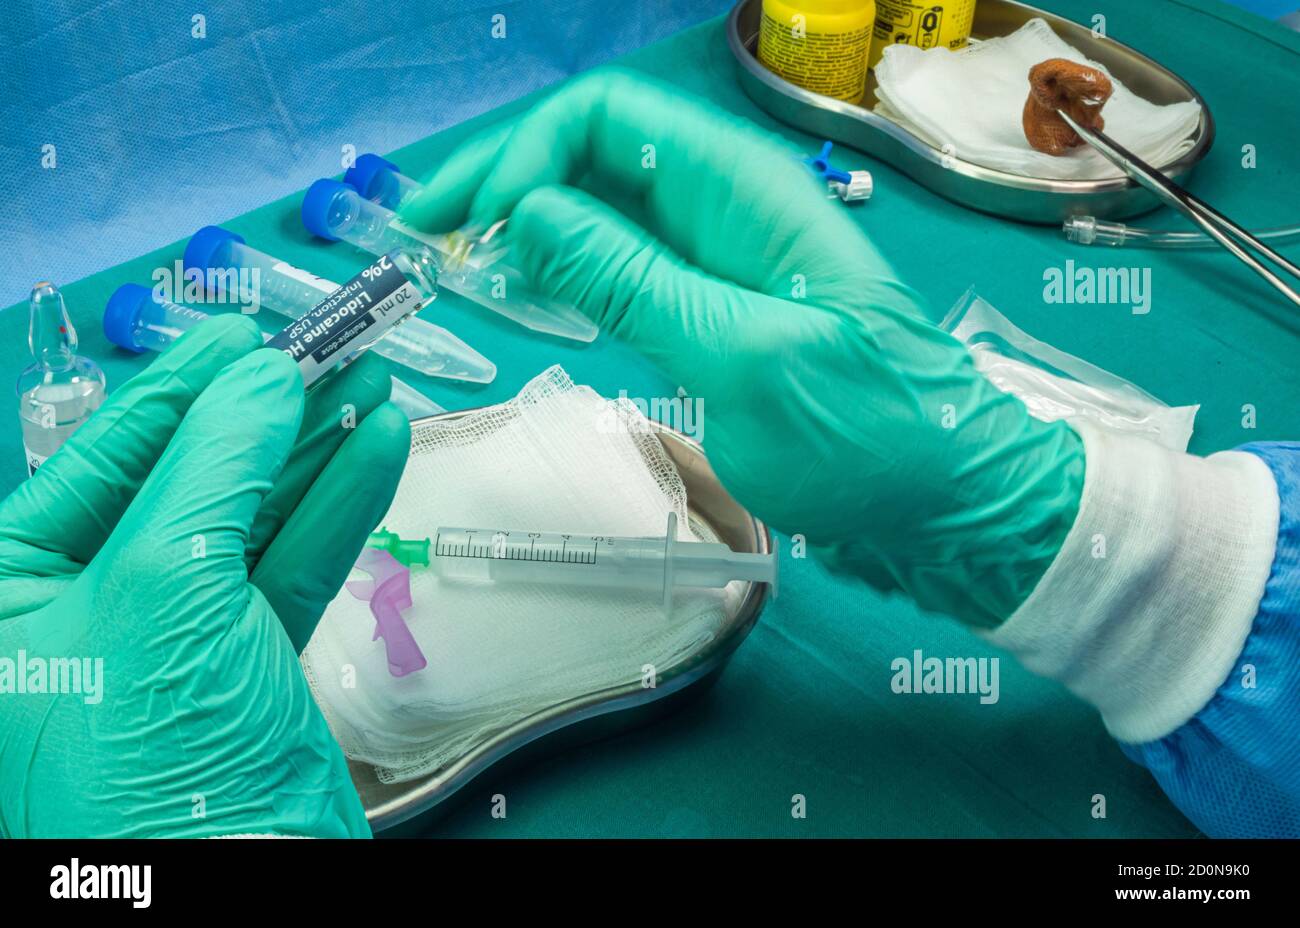 L'infirmière brise le flacon d'anesthésie, préparation pour extraire le liquide céphalorachidien pour étudier les causes chez une personne atteinte par la myélite transversale qui était inj Banque D'Images